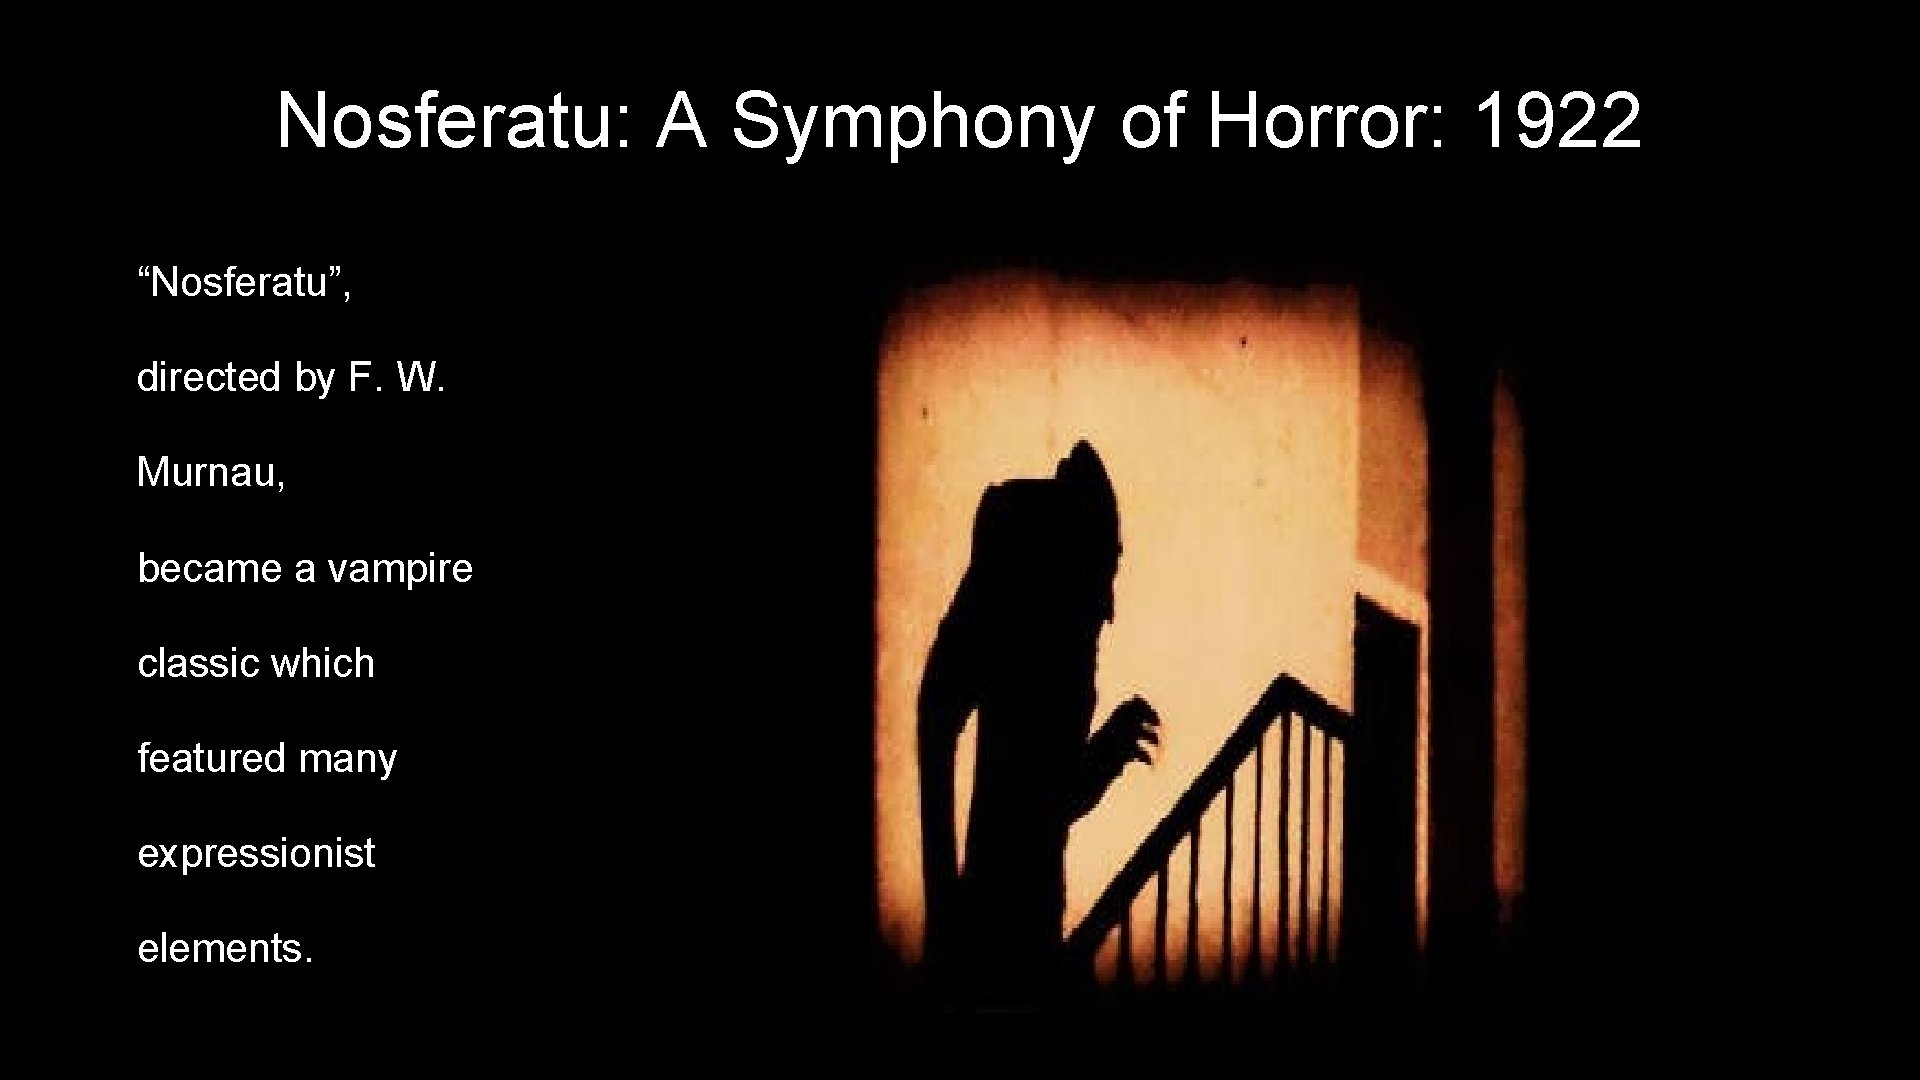 Nosferatu: A Symphony of Horror: 1922 “Nosferatu”, directed by F. W. Murnau, became a